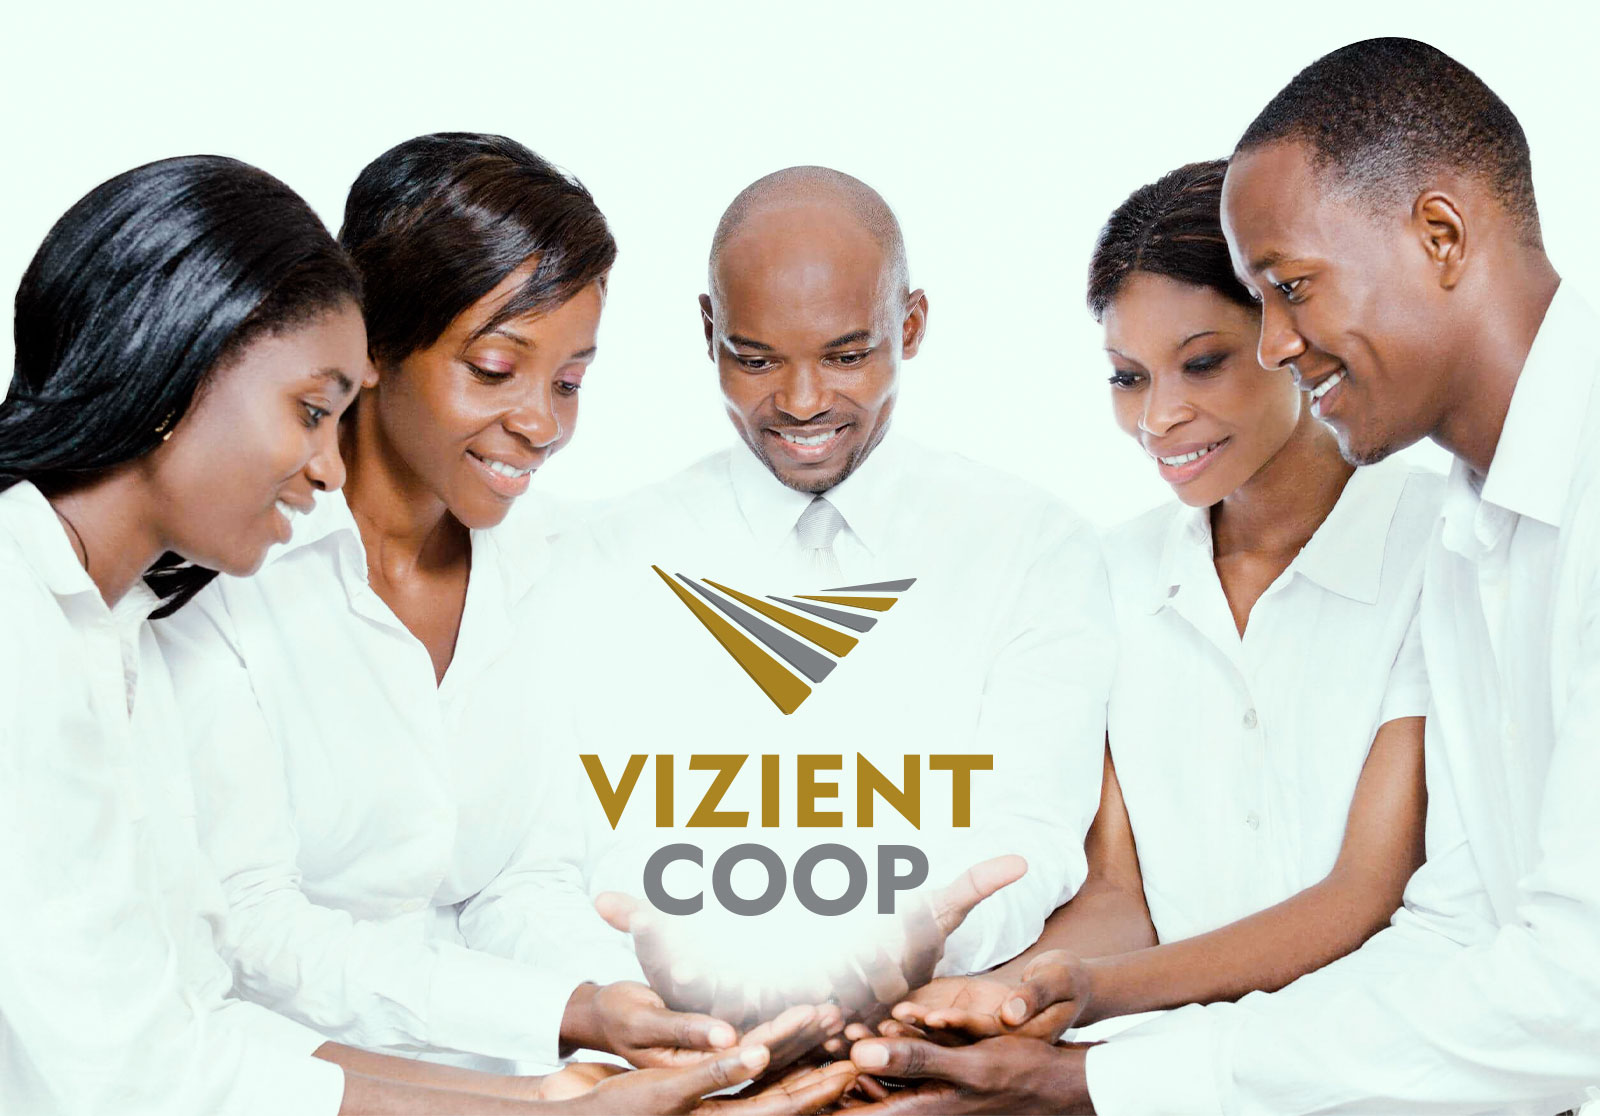 Evolution of African Prosperity: Volition Coop Rebrands as Vizient Coop